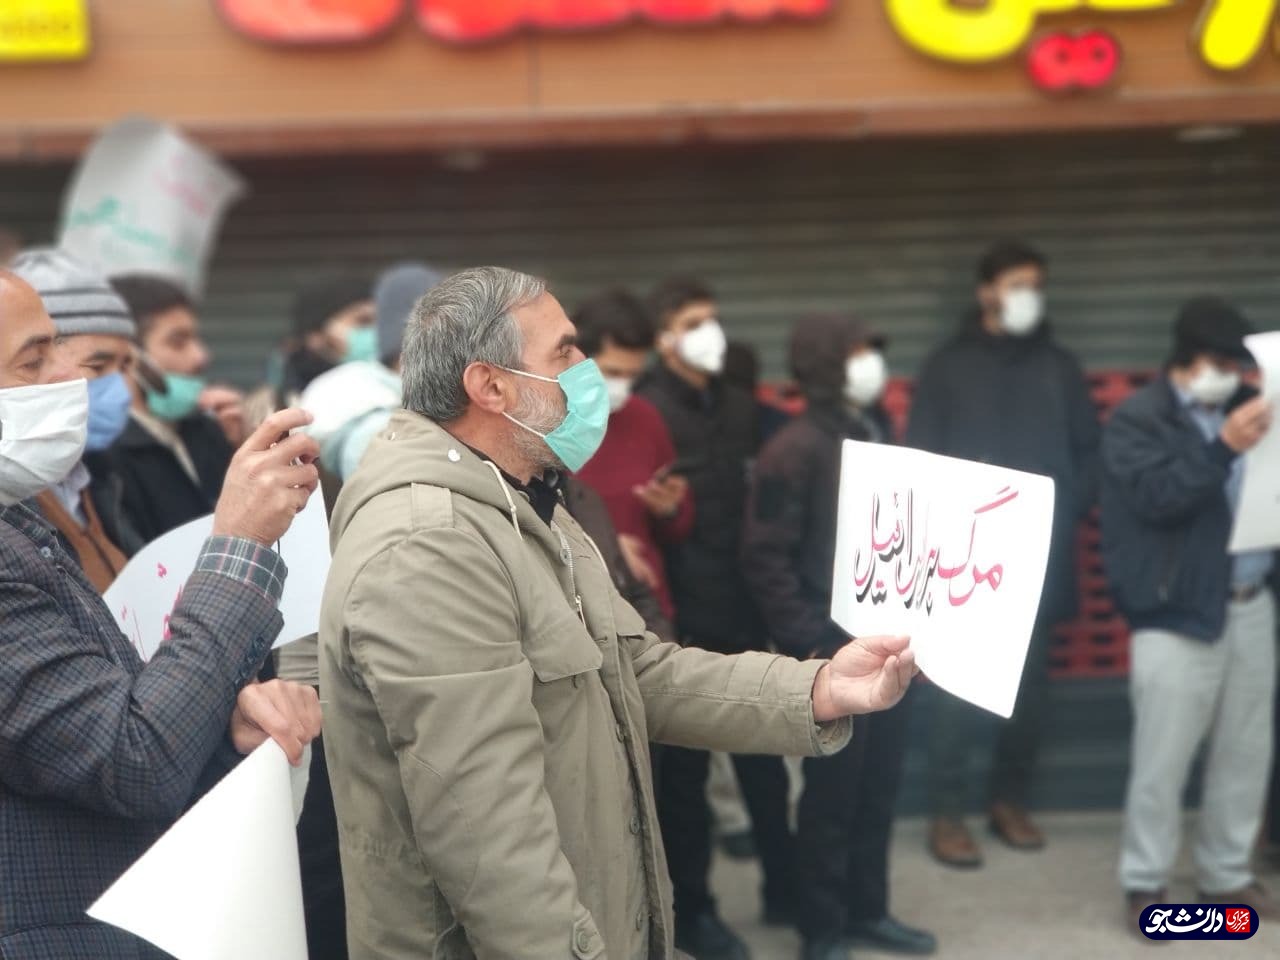 دانشجویان و مردم انقلابی مشهد در اعتراض به ترور شهید فخری زاده تجمع کردند / شعار مردم: نفوذی داخلی؛ جی پی اس اسرائیل!